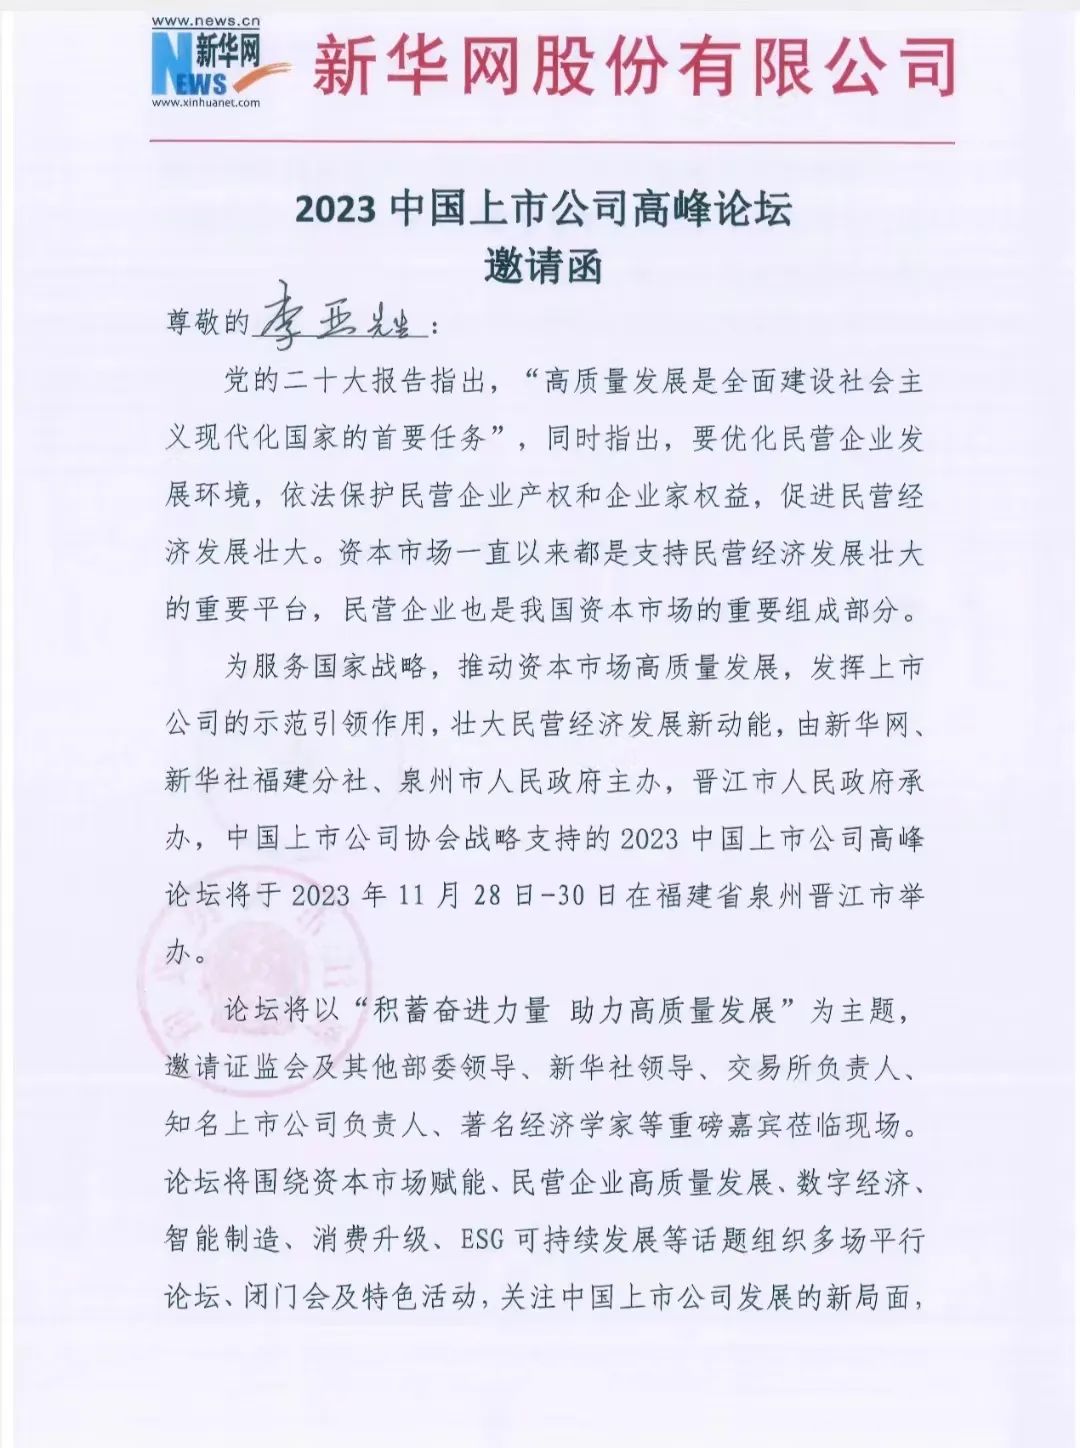 【简讯】凯发娱发com中国董事长受邀出席2023中国上市公司高峰论坛